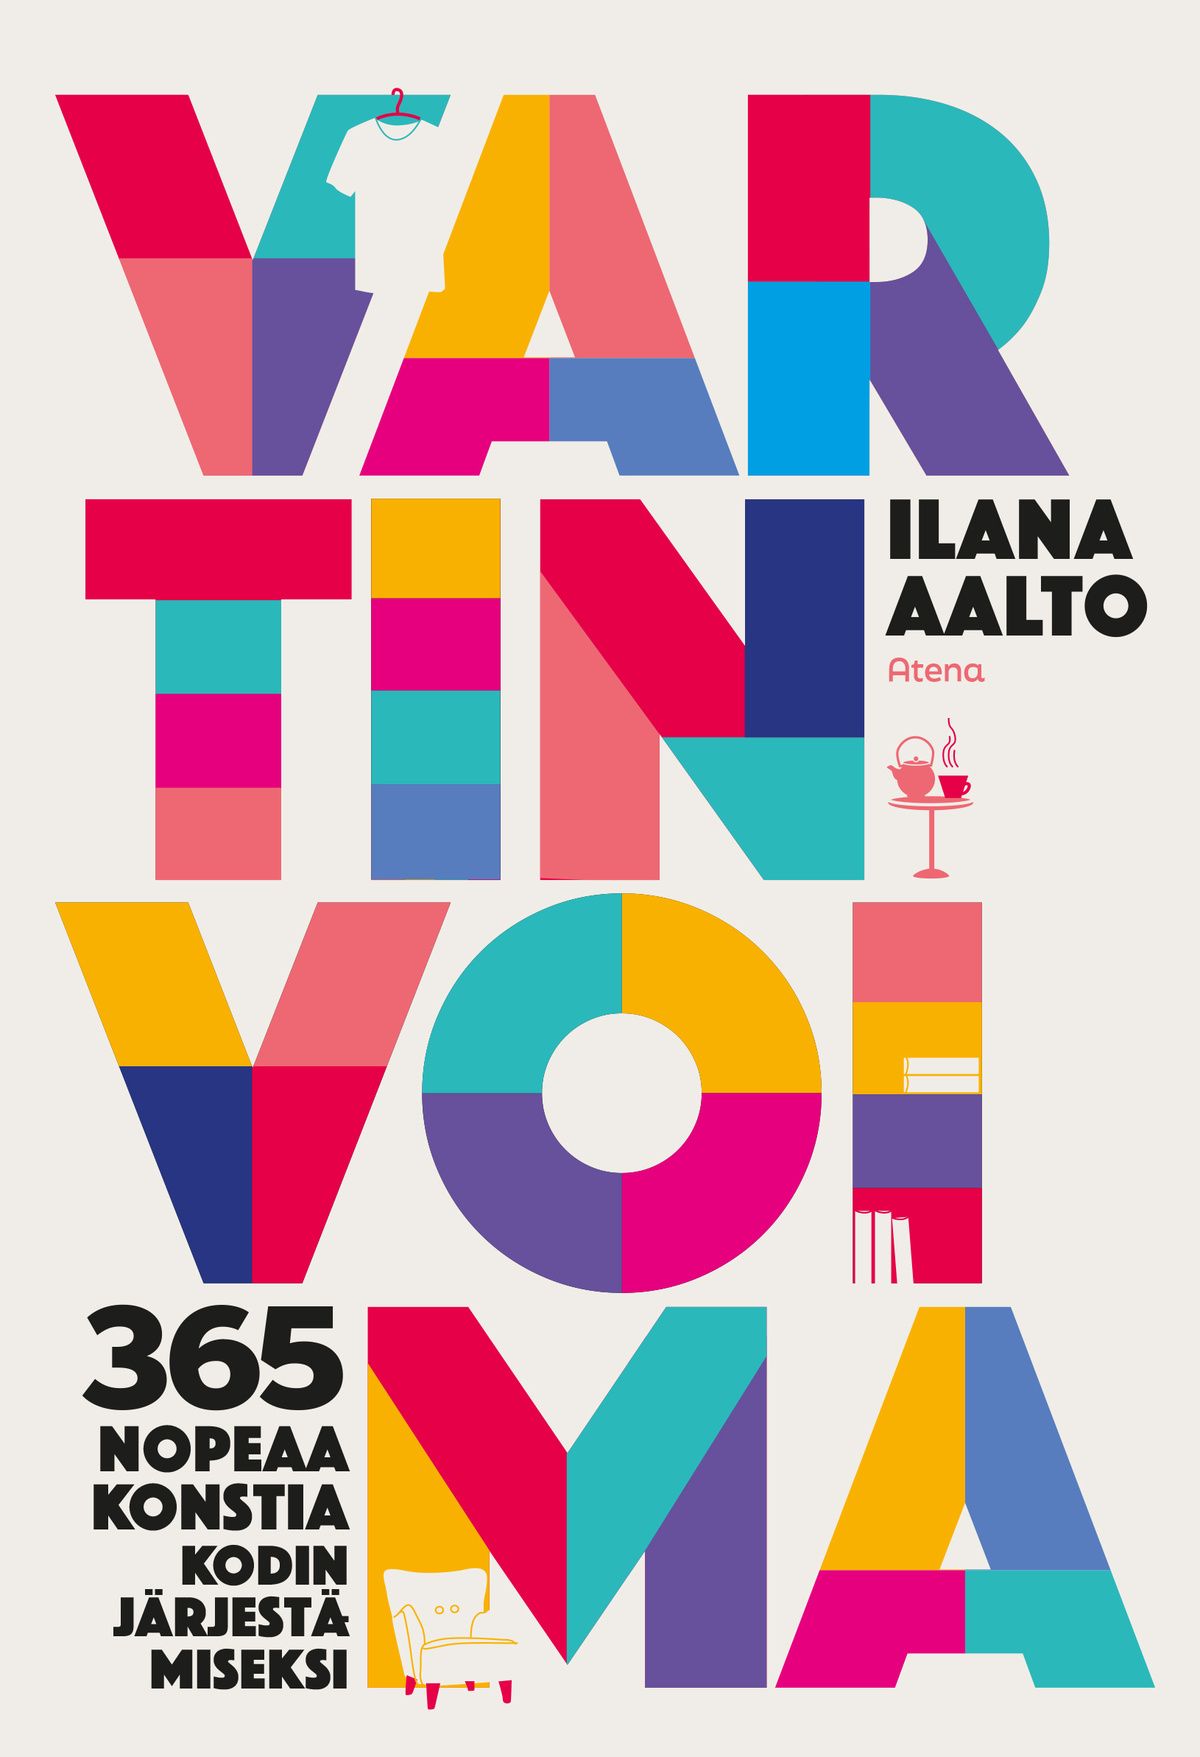 Ilana Aalto : Vartin voima